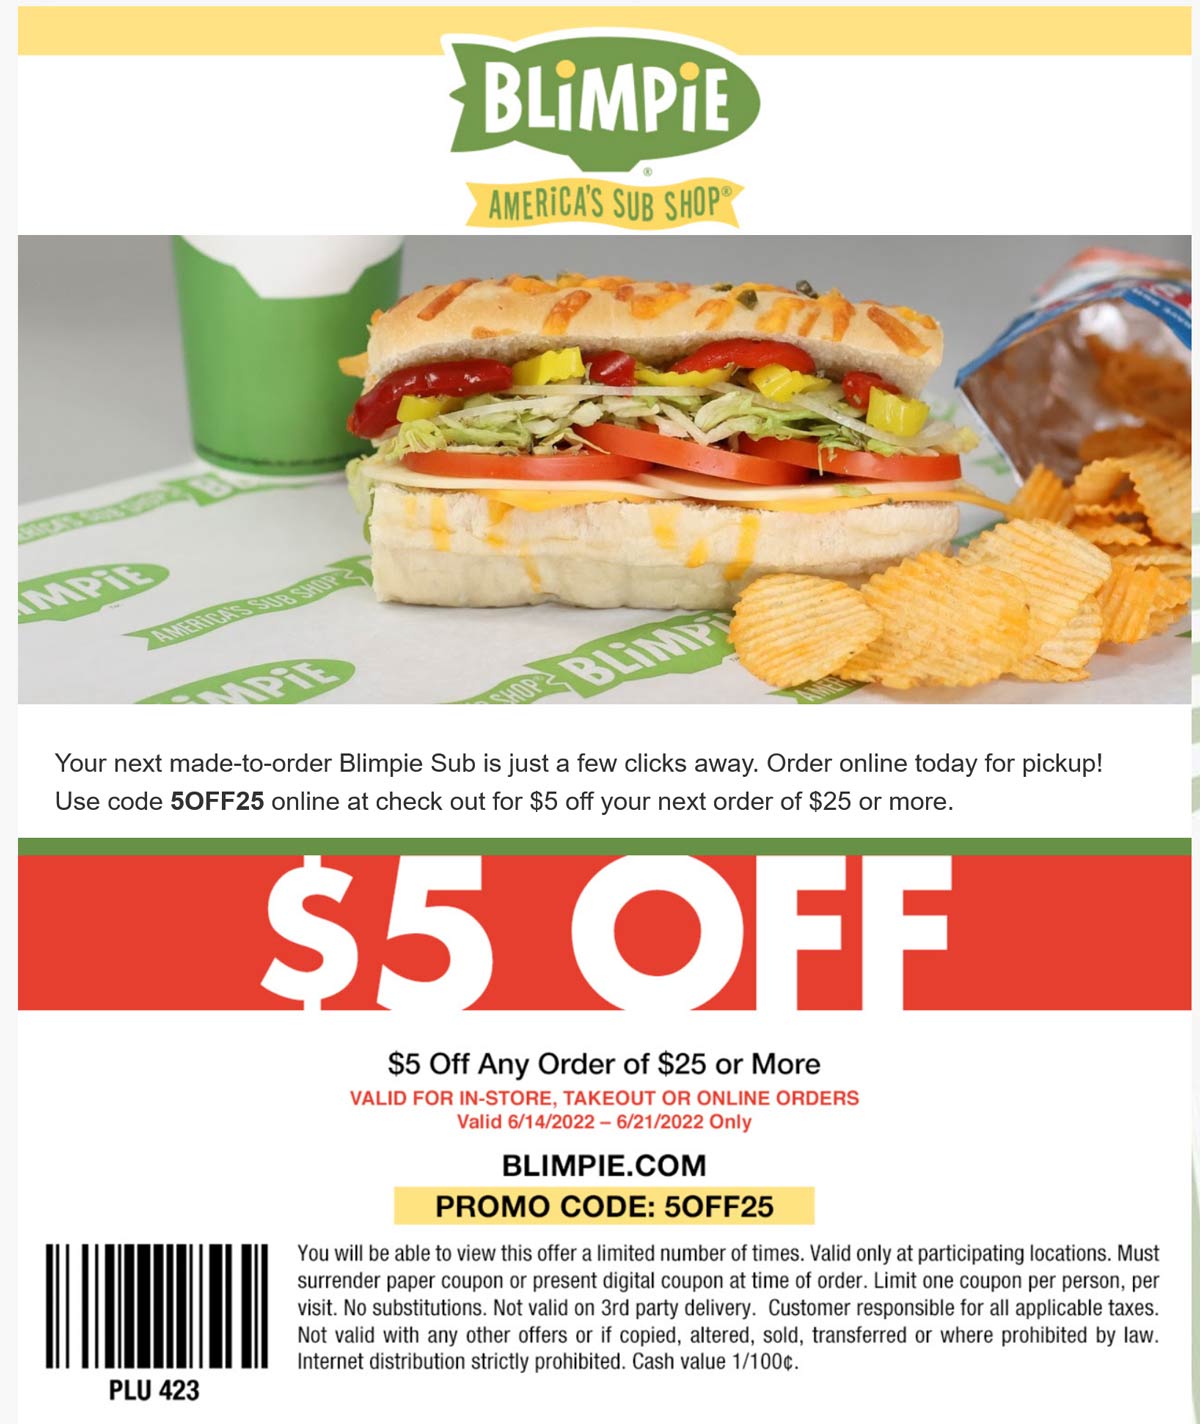 Blimpie restaurants Coupon  $5 off $25 at Blimpie restaurants via promo code 5OFF25 #blimpie 